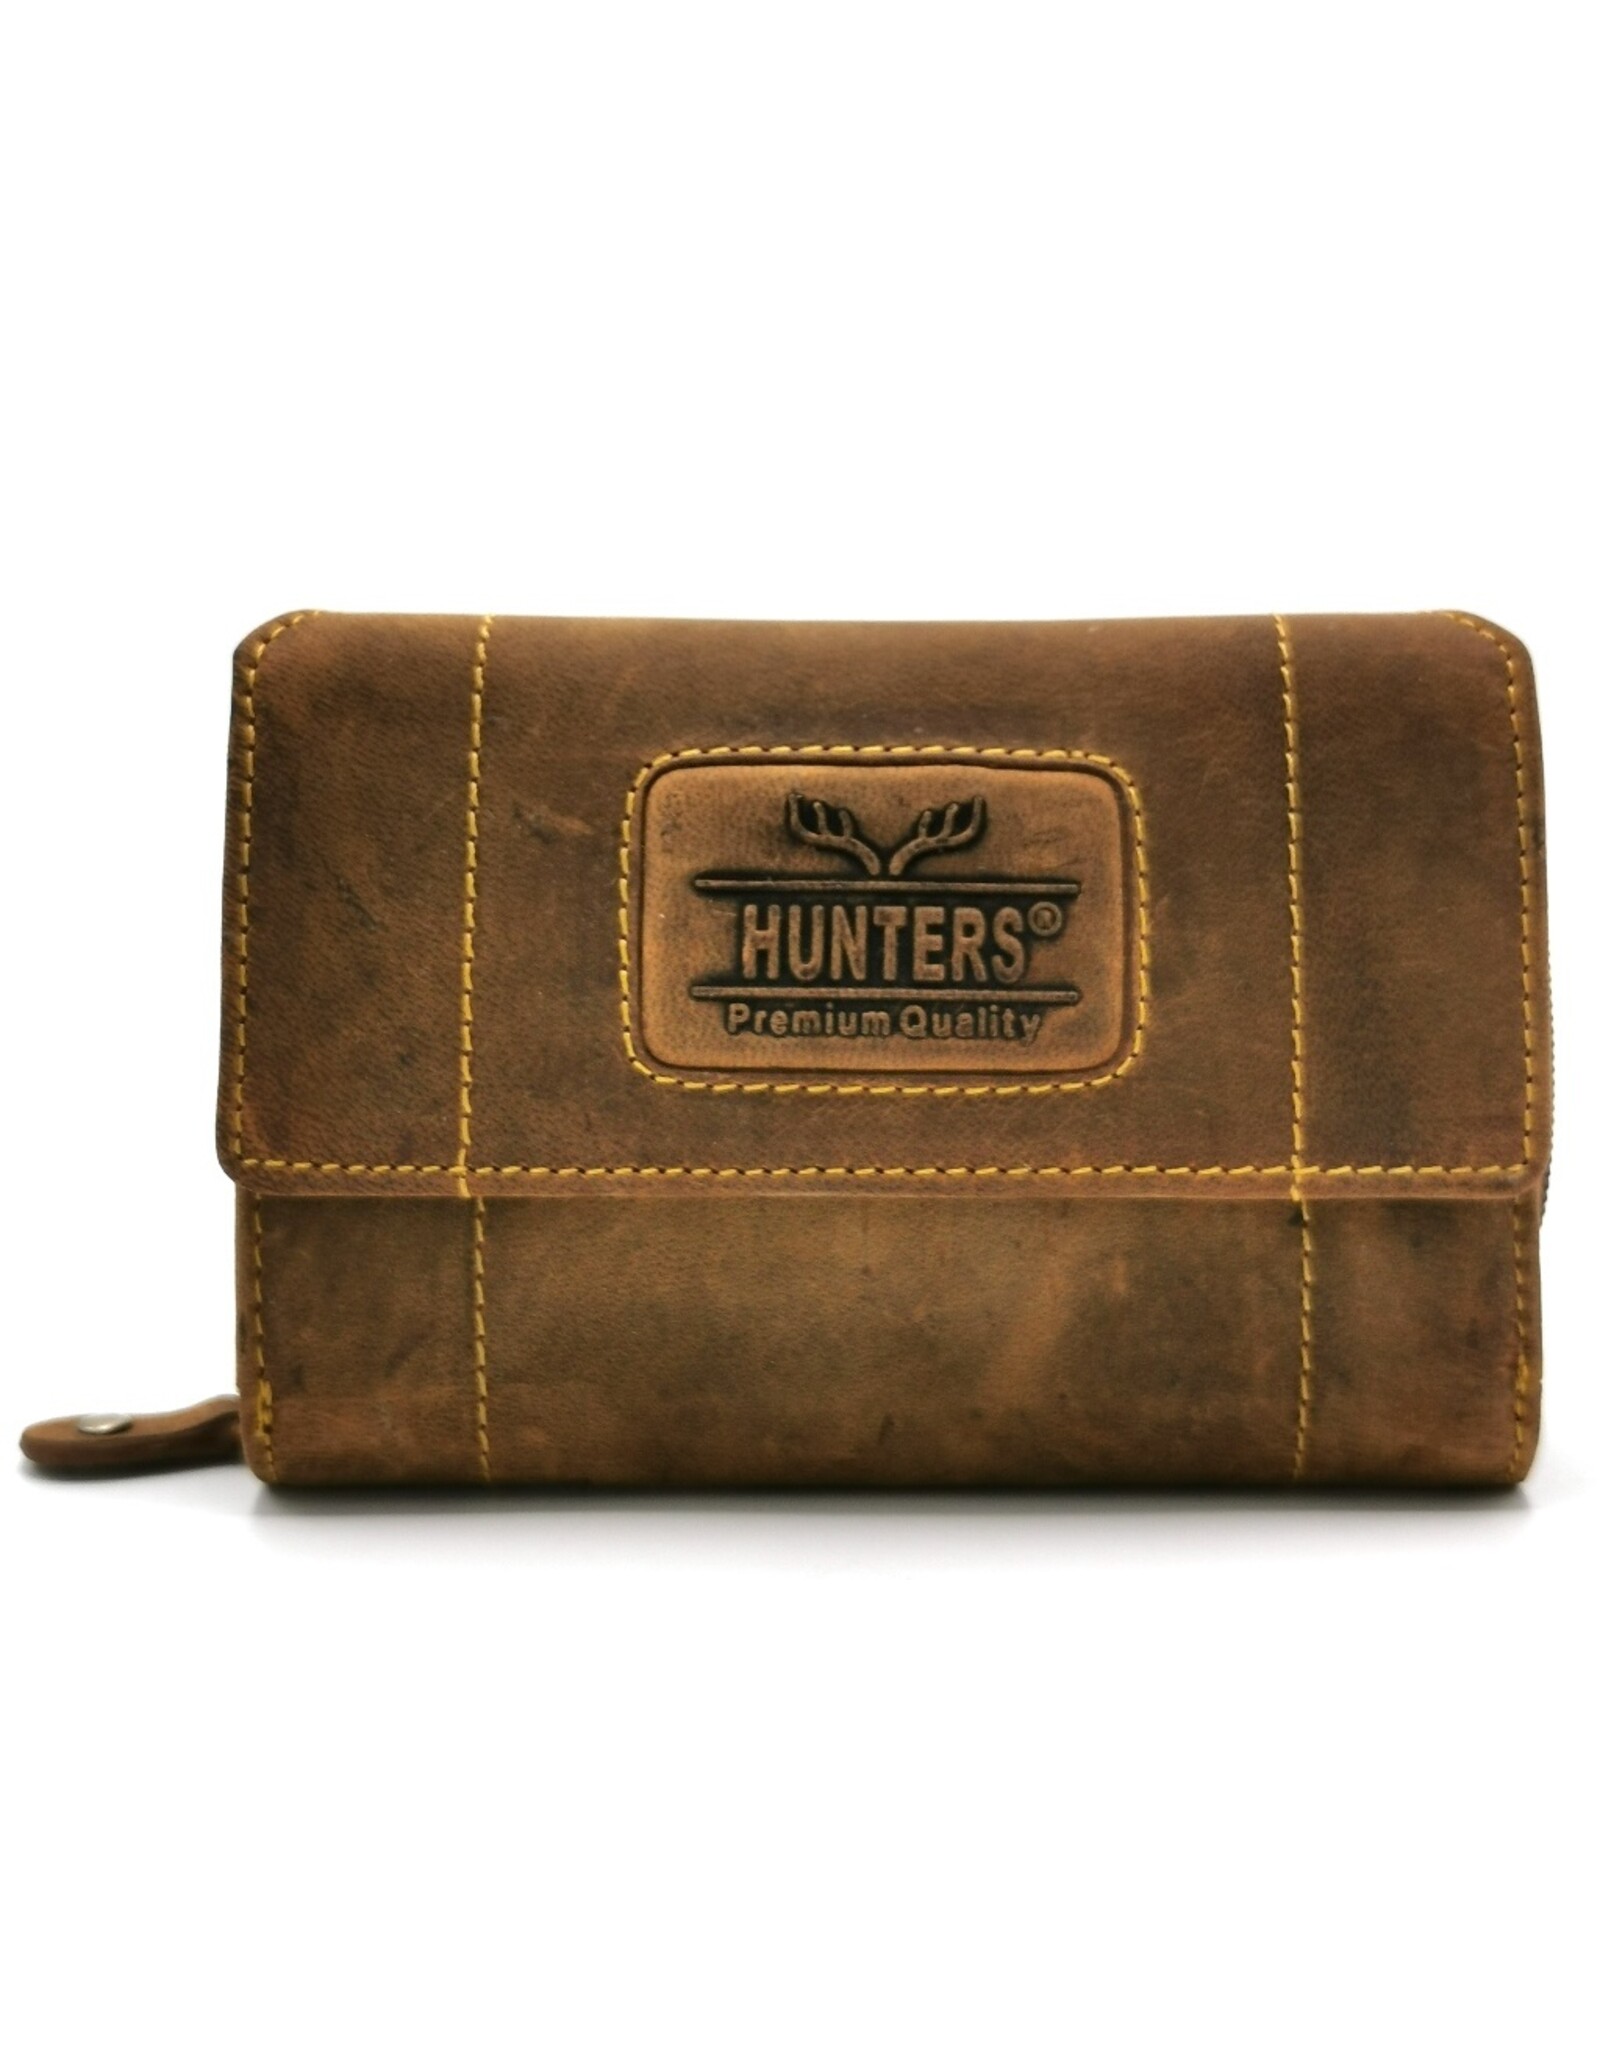 Hunters Leather Wallets -  Leather wallet Hunters - Unisex